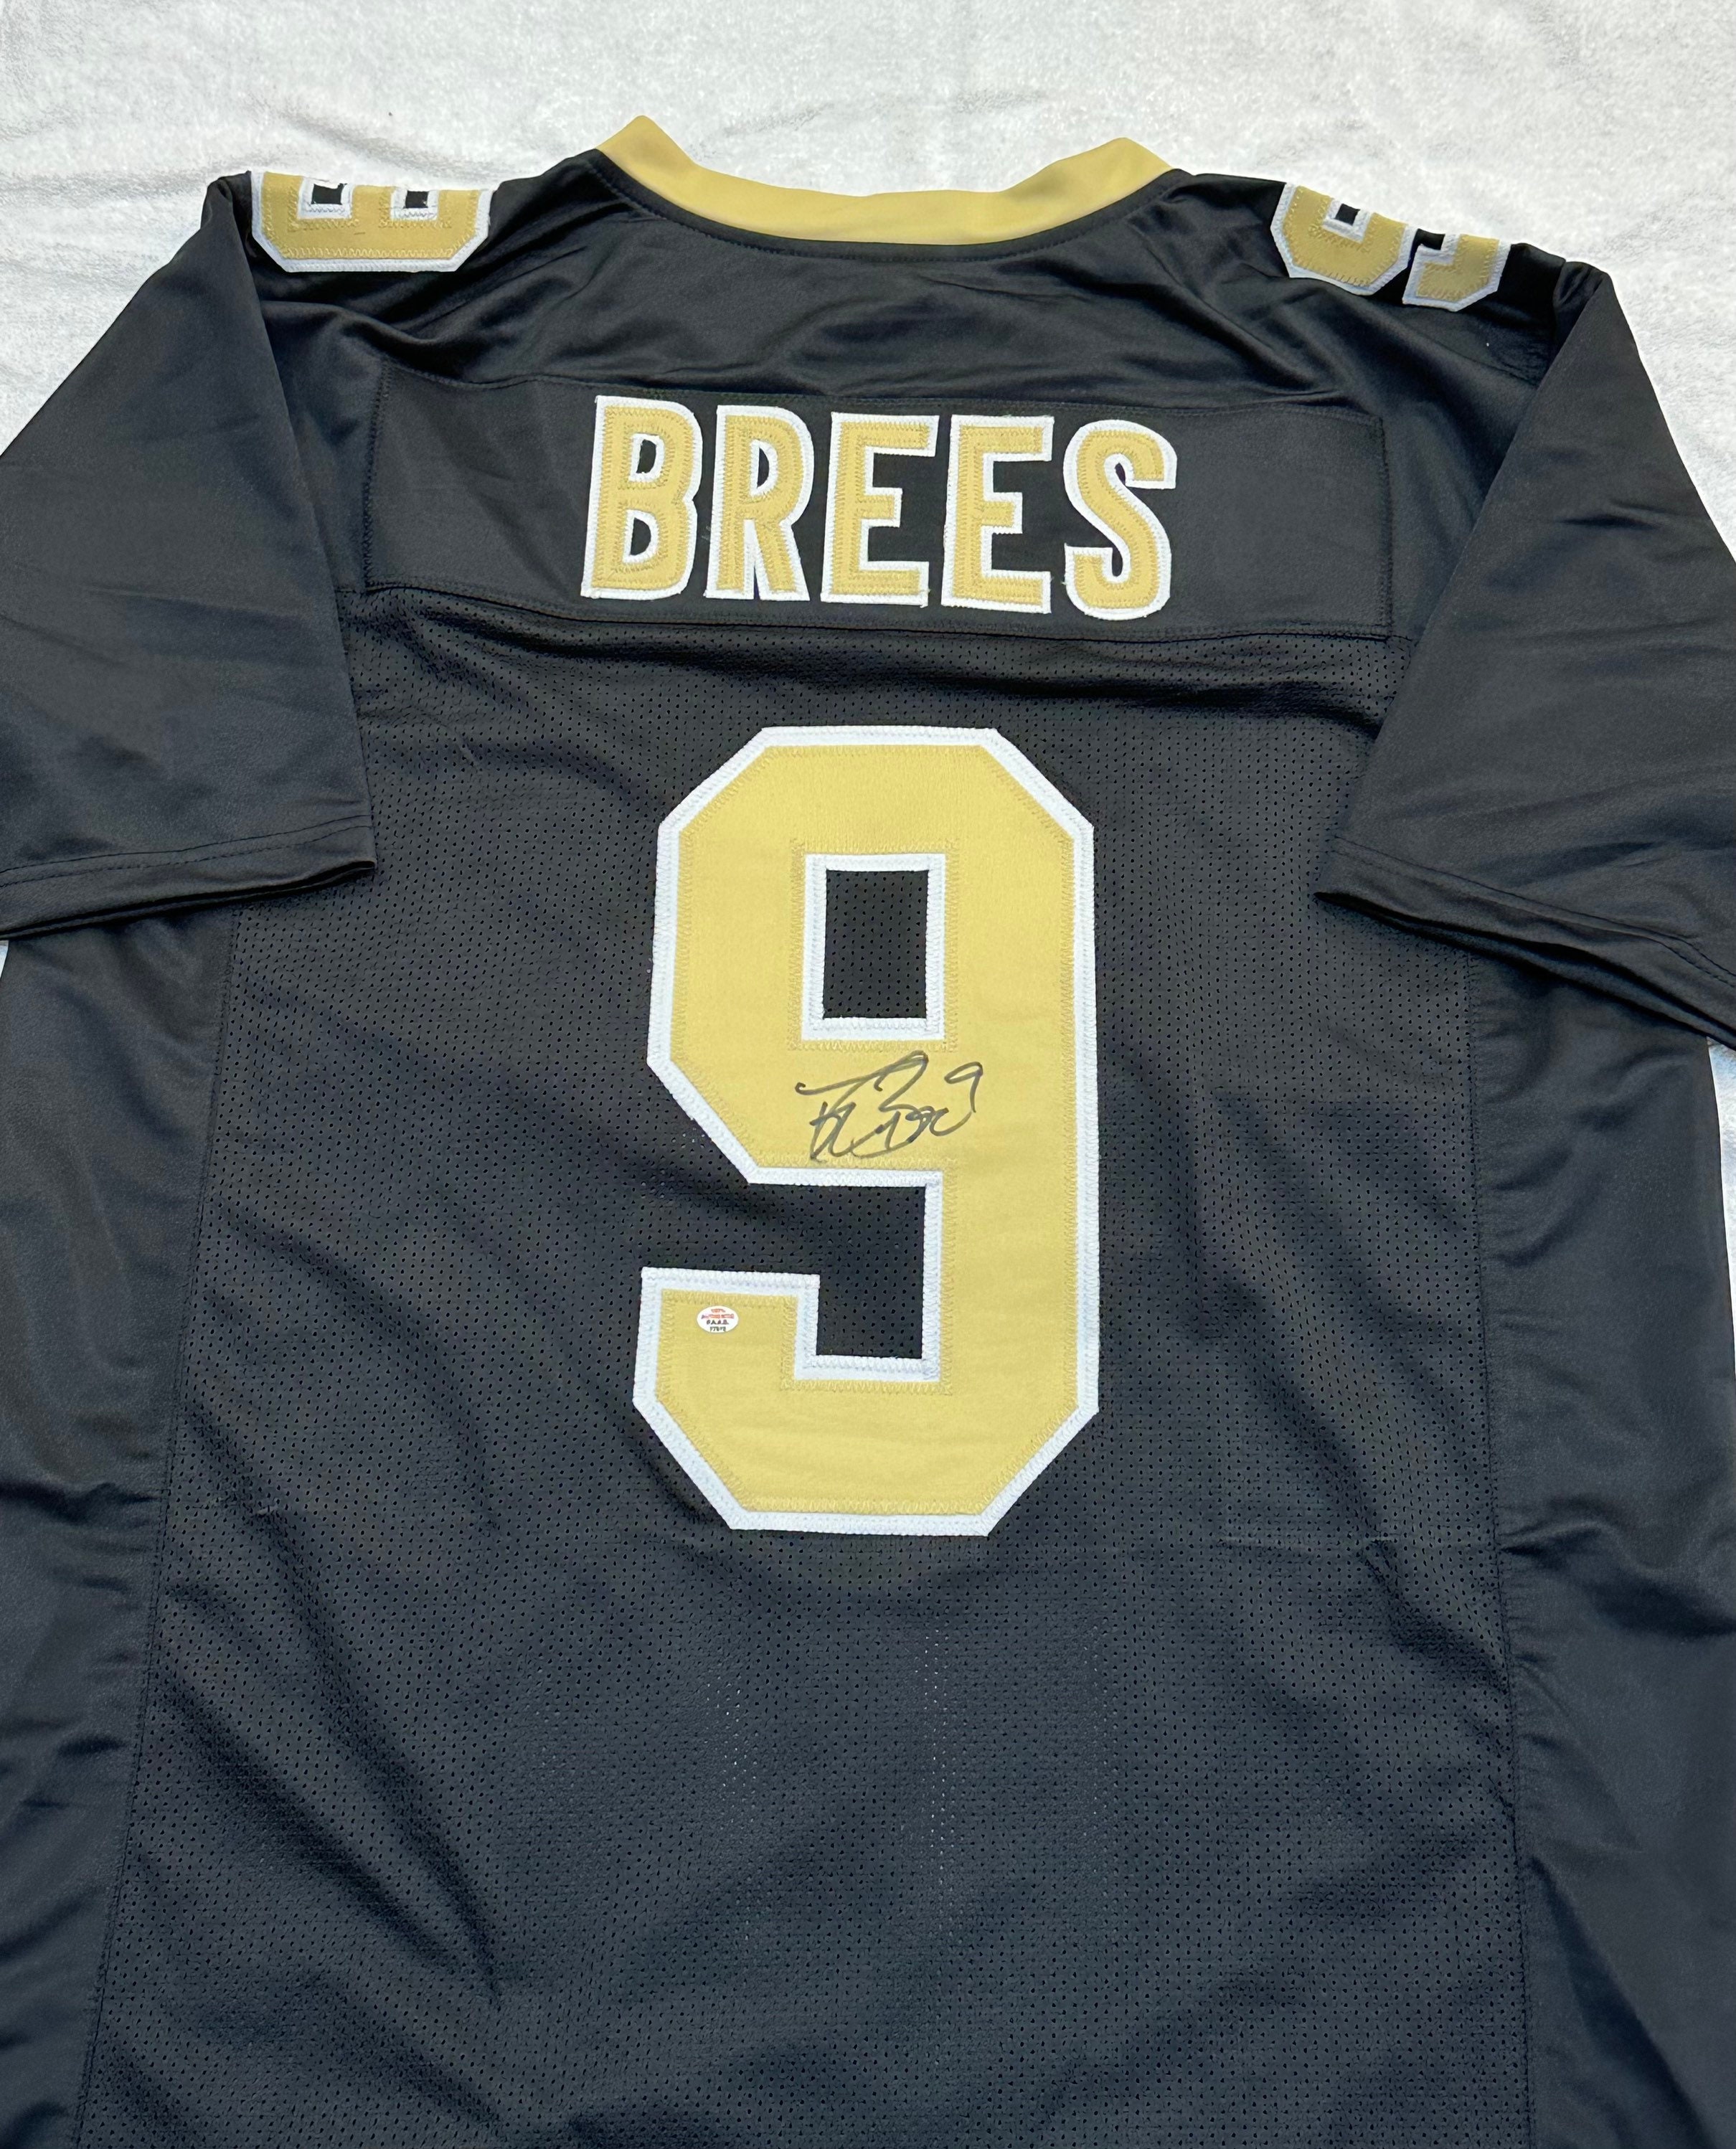 Drew Brees Autographed New Orleans Saints 16x20 Photo - BAS COA (White  Jersey)